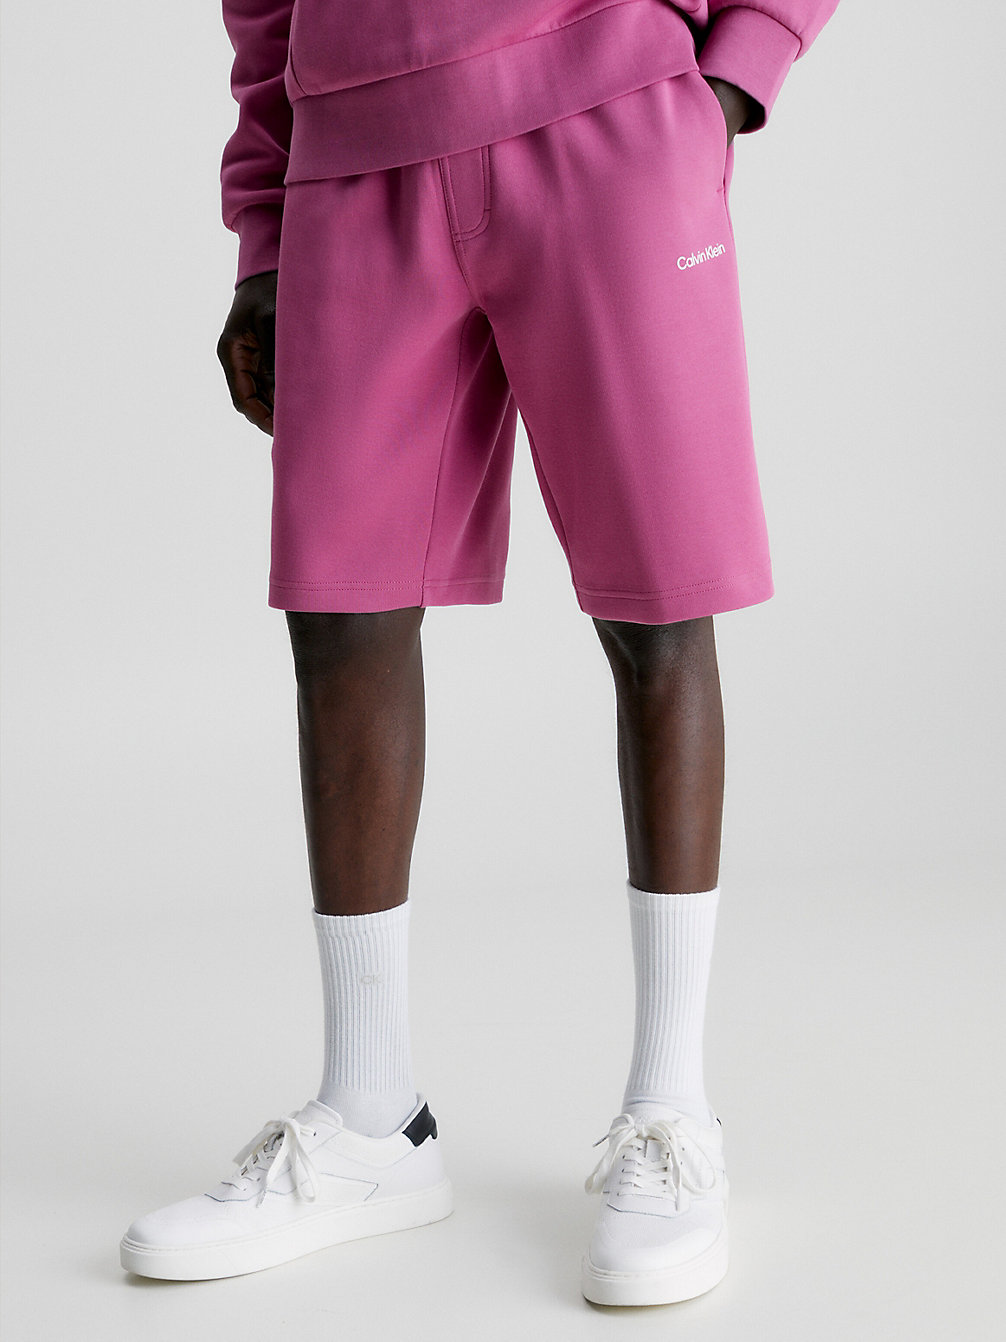 PALE FUCHSIA > Jogging-Shorts Aus Recyceltem Polyester > undefined Herren - Calvin Klein